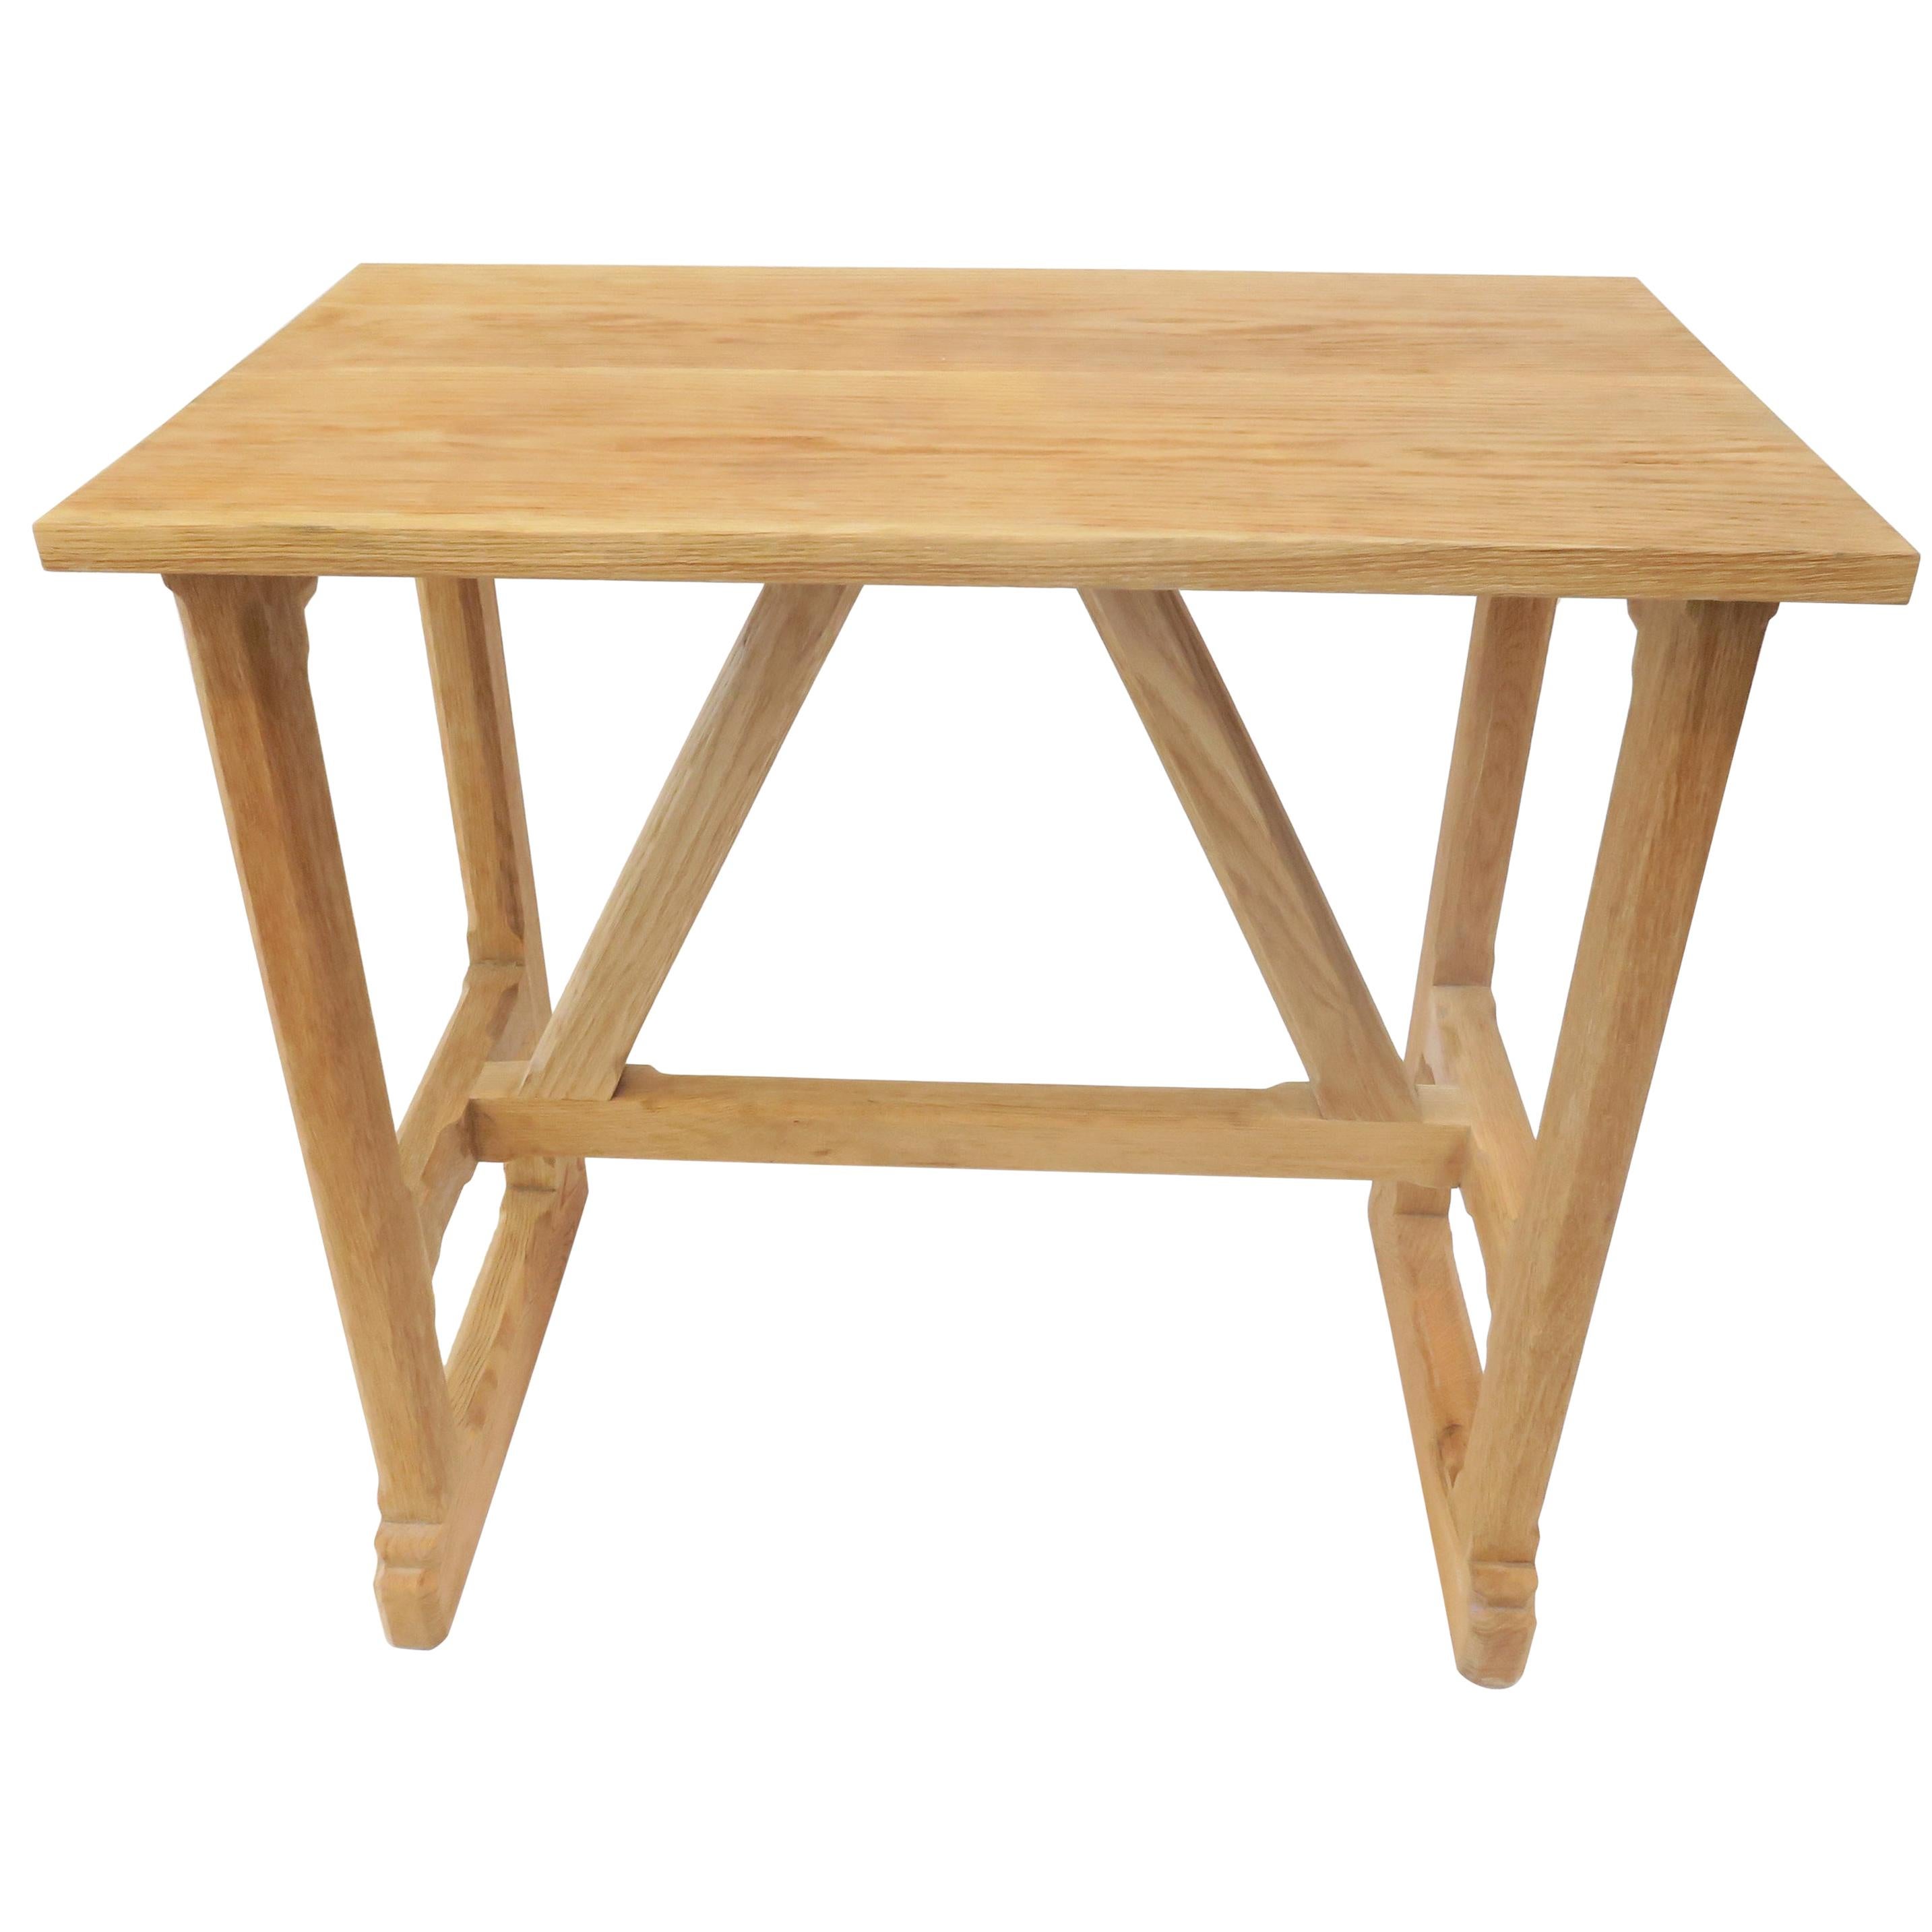 Der West Trestle Side Table von Martin & Brockett zeichnet sich durch einen rustikalen, handwerklich gefertigten Rahmen mit handgeschnitzten Details aus.

H 30.5 in. x B 31.25 in. x T 18 in.

Teil unserer West Trestle Collection'S.

Auf Bestellung